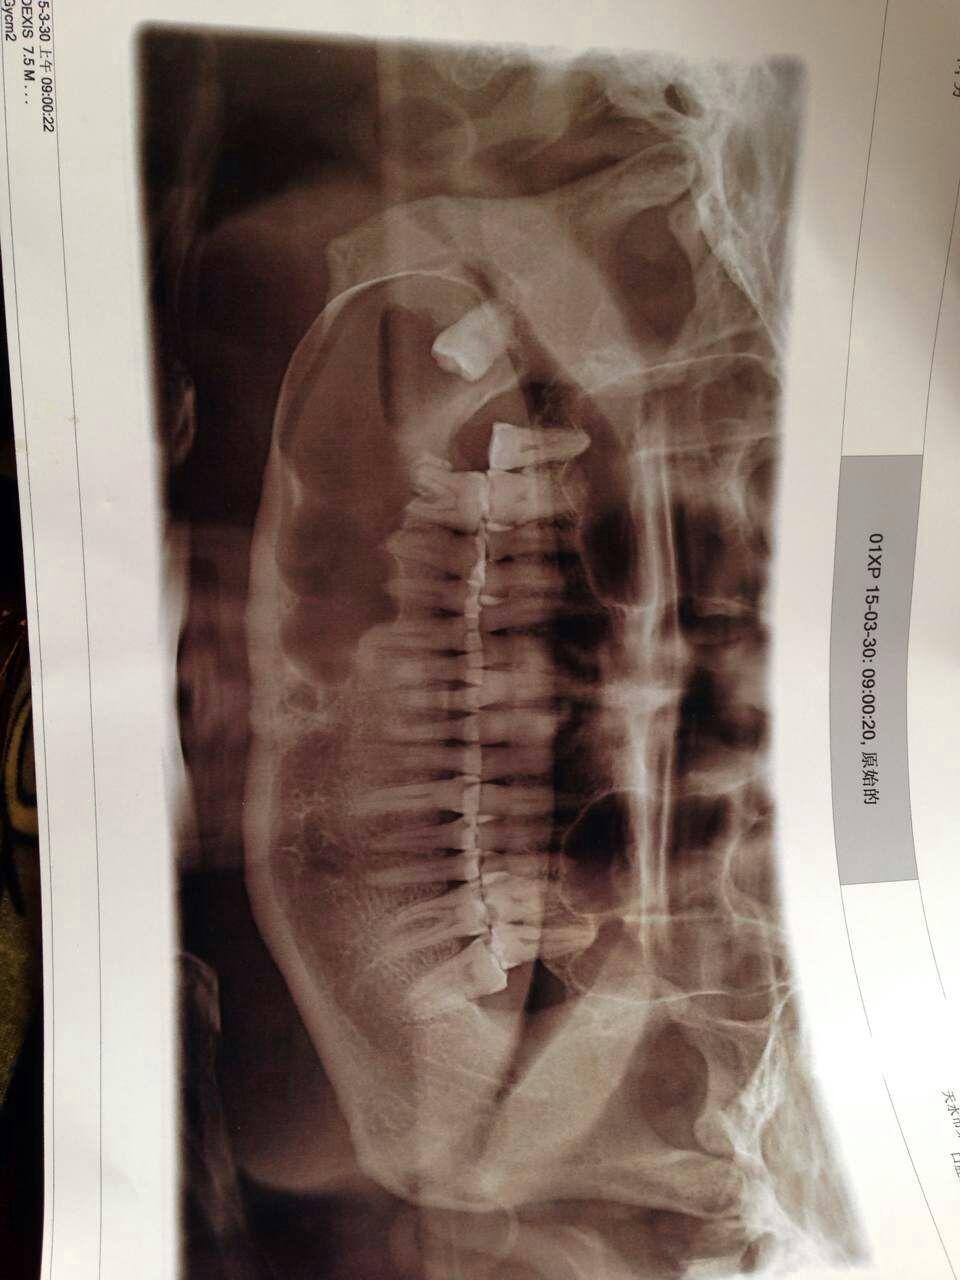 中央性颌骨骨髓炎图片图片